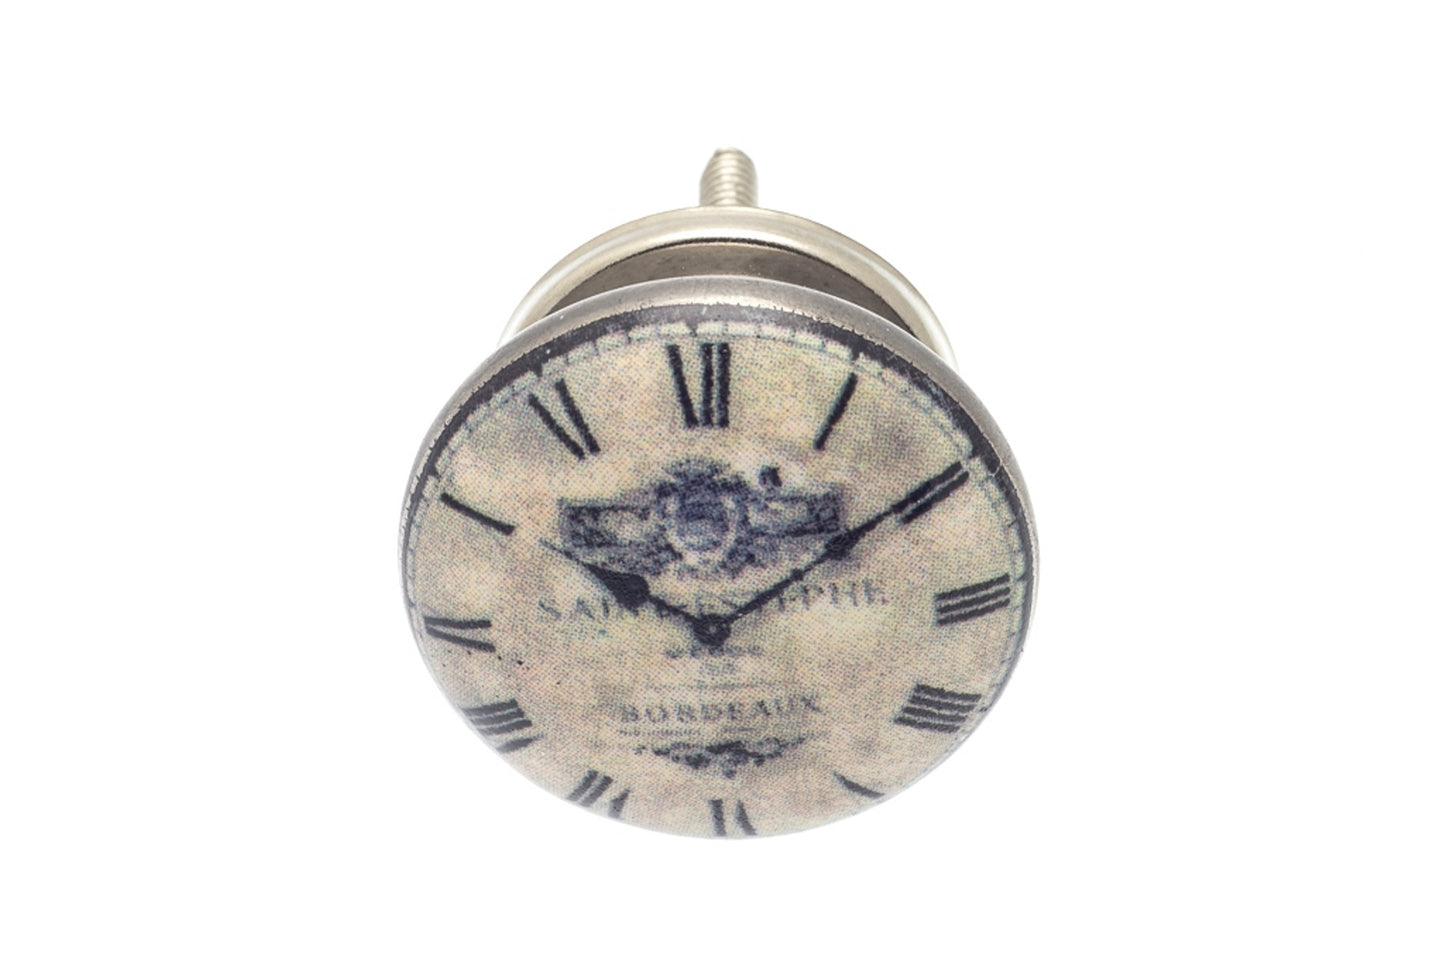 Ceramic Knob 'St. Estephe' Vintage Clock 38mm